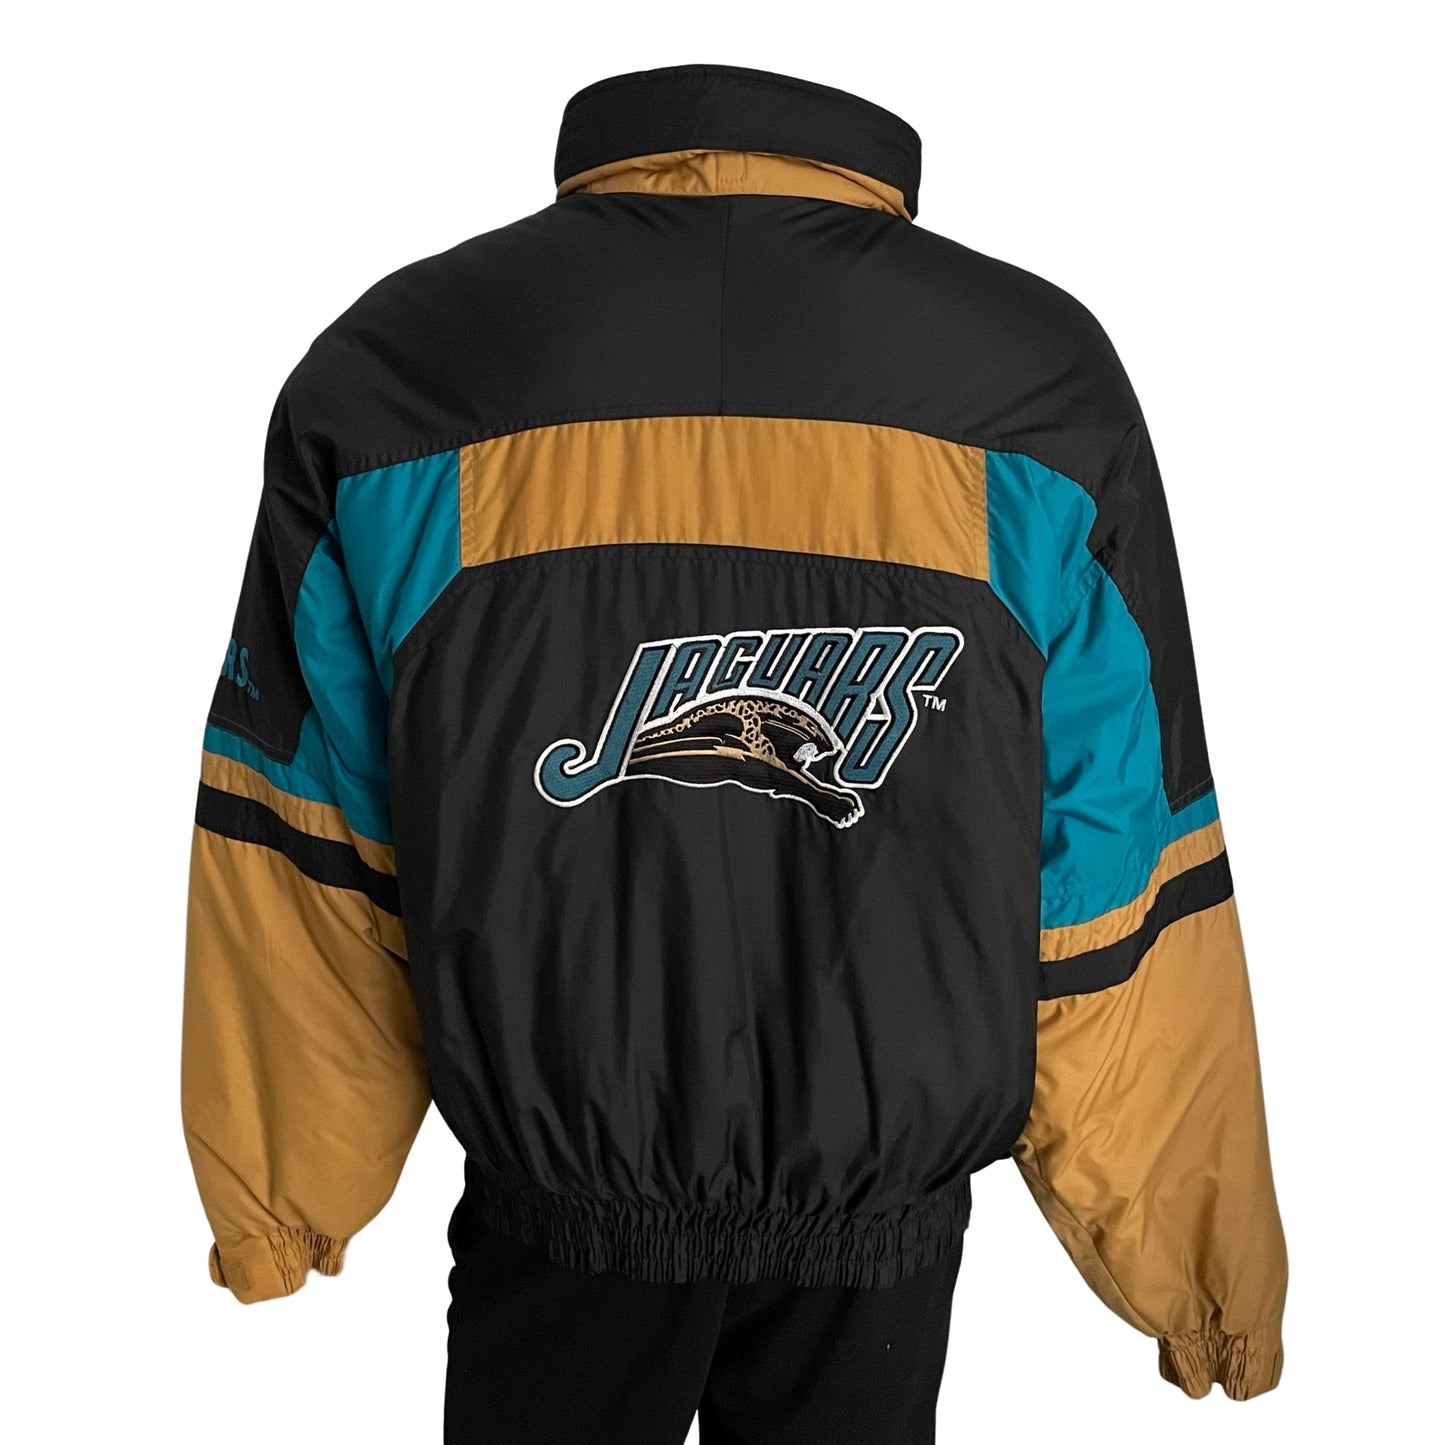 Vintage Jacksonville Jaguars banned logo jacket size XL